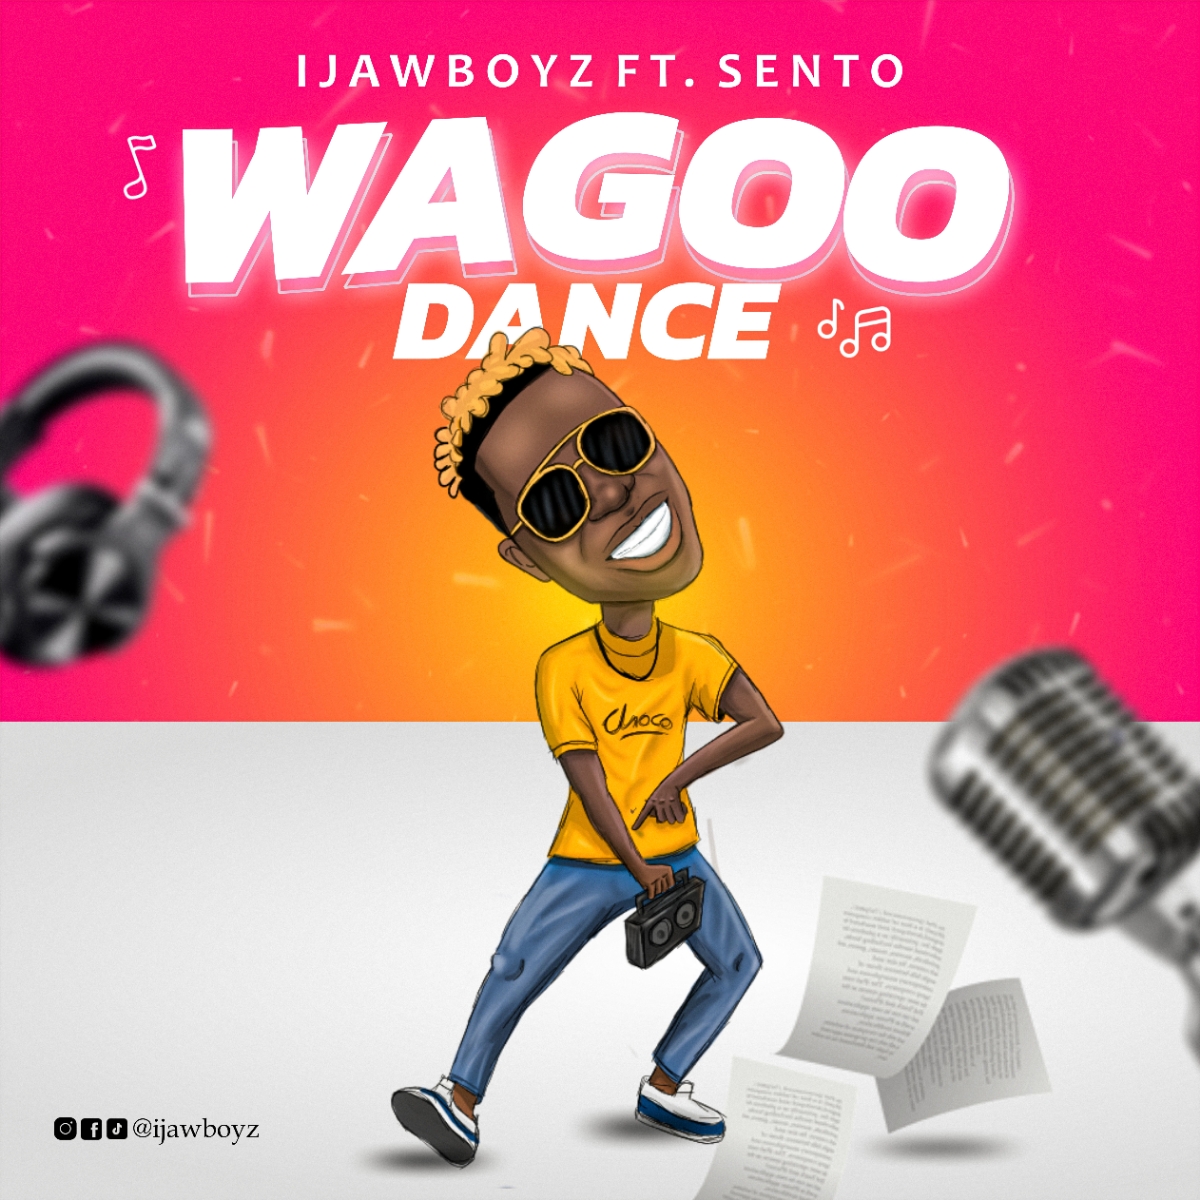 IjawBoyz -"Wagoo Dance" (Feat. Sento) 17